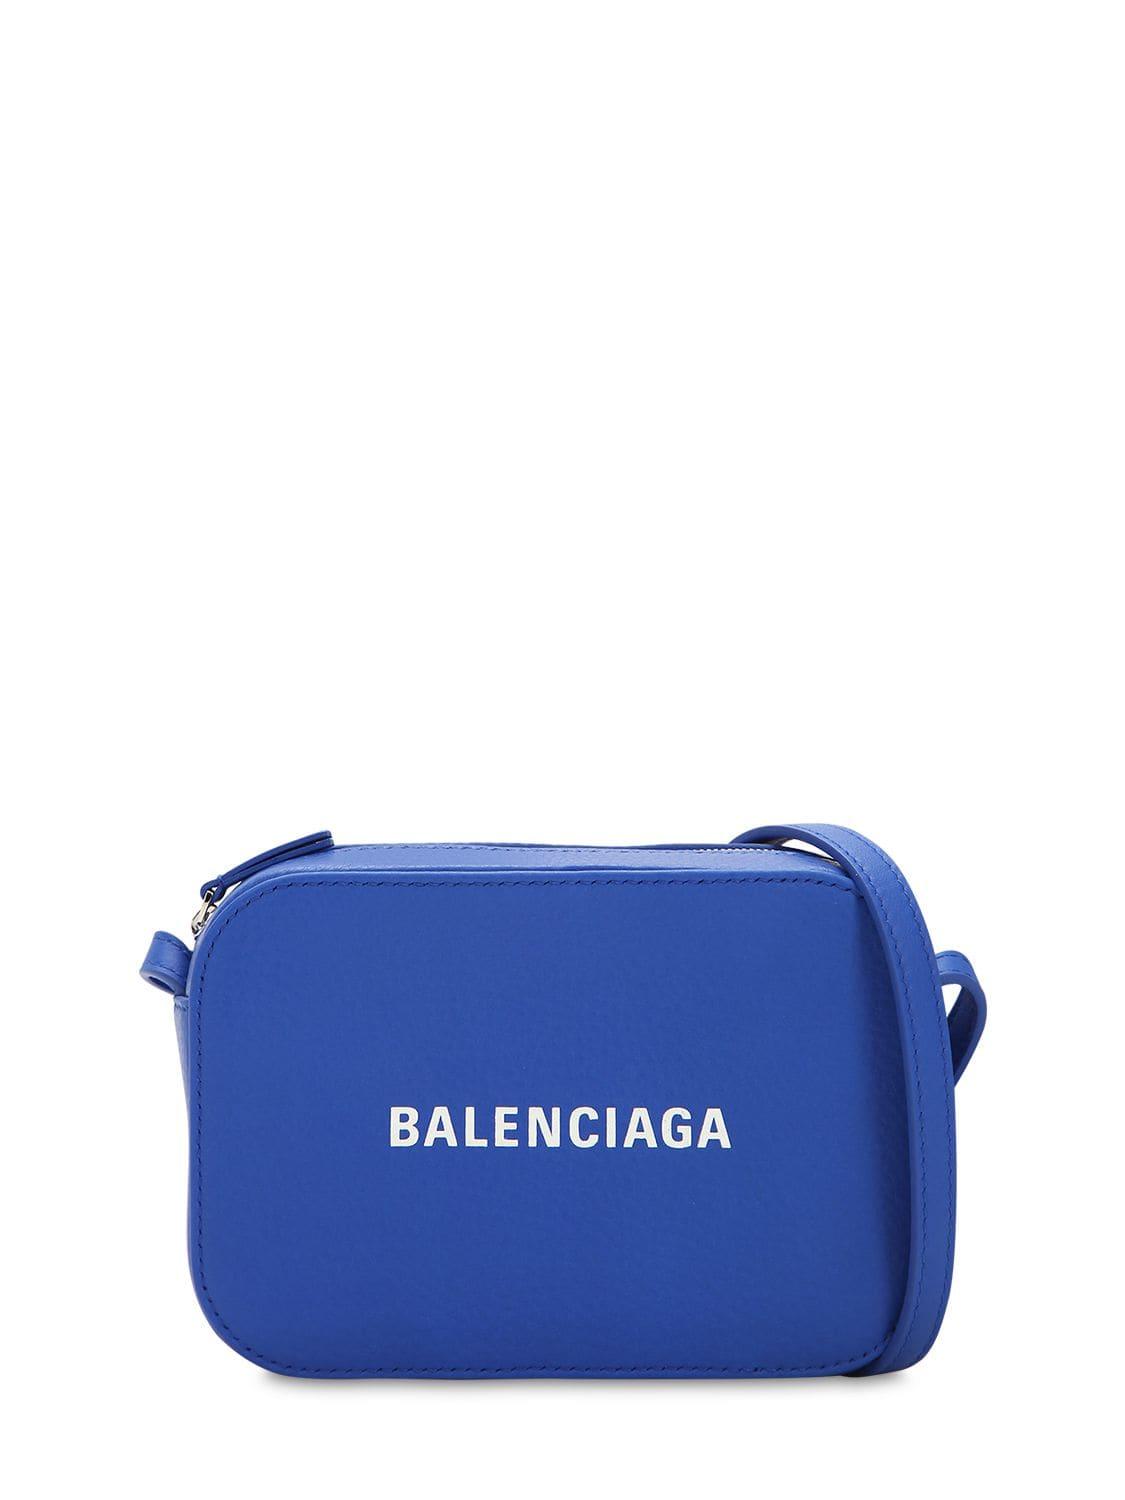 Balenciaga Blue Leather Everyday Camera Bag Balenciaga